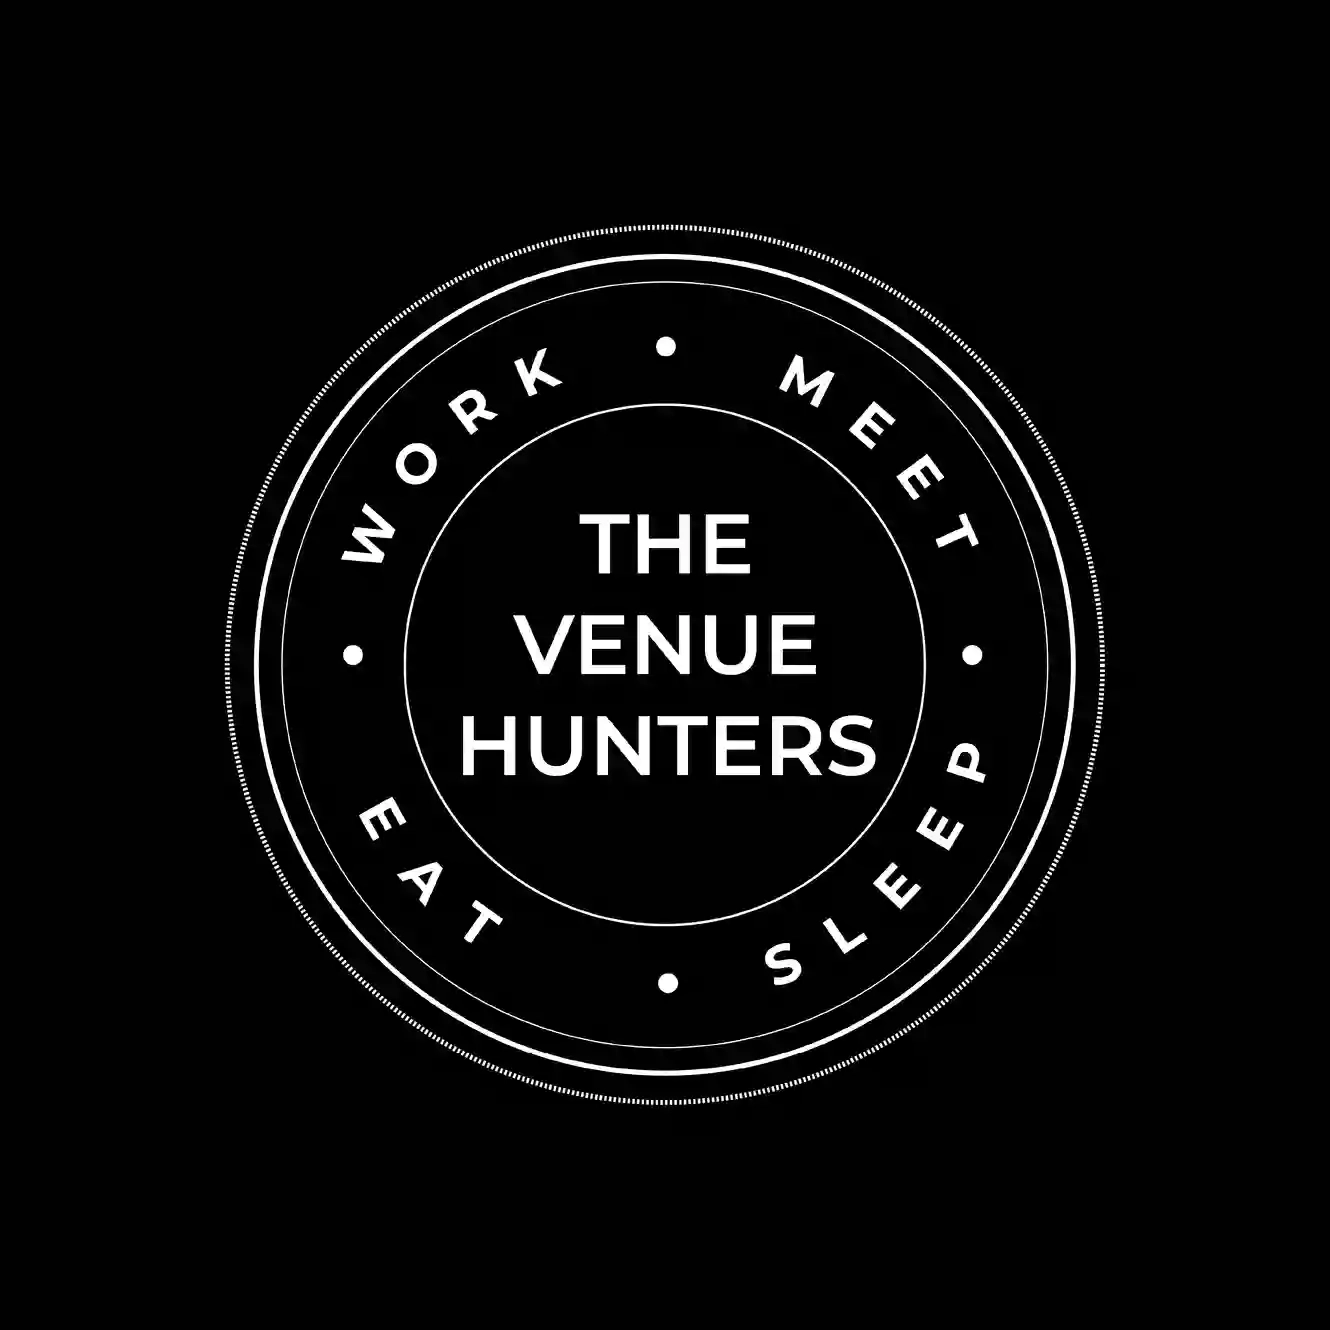 The Venue Hunters